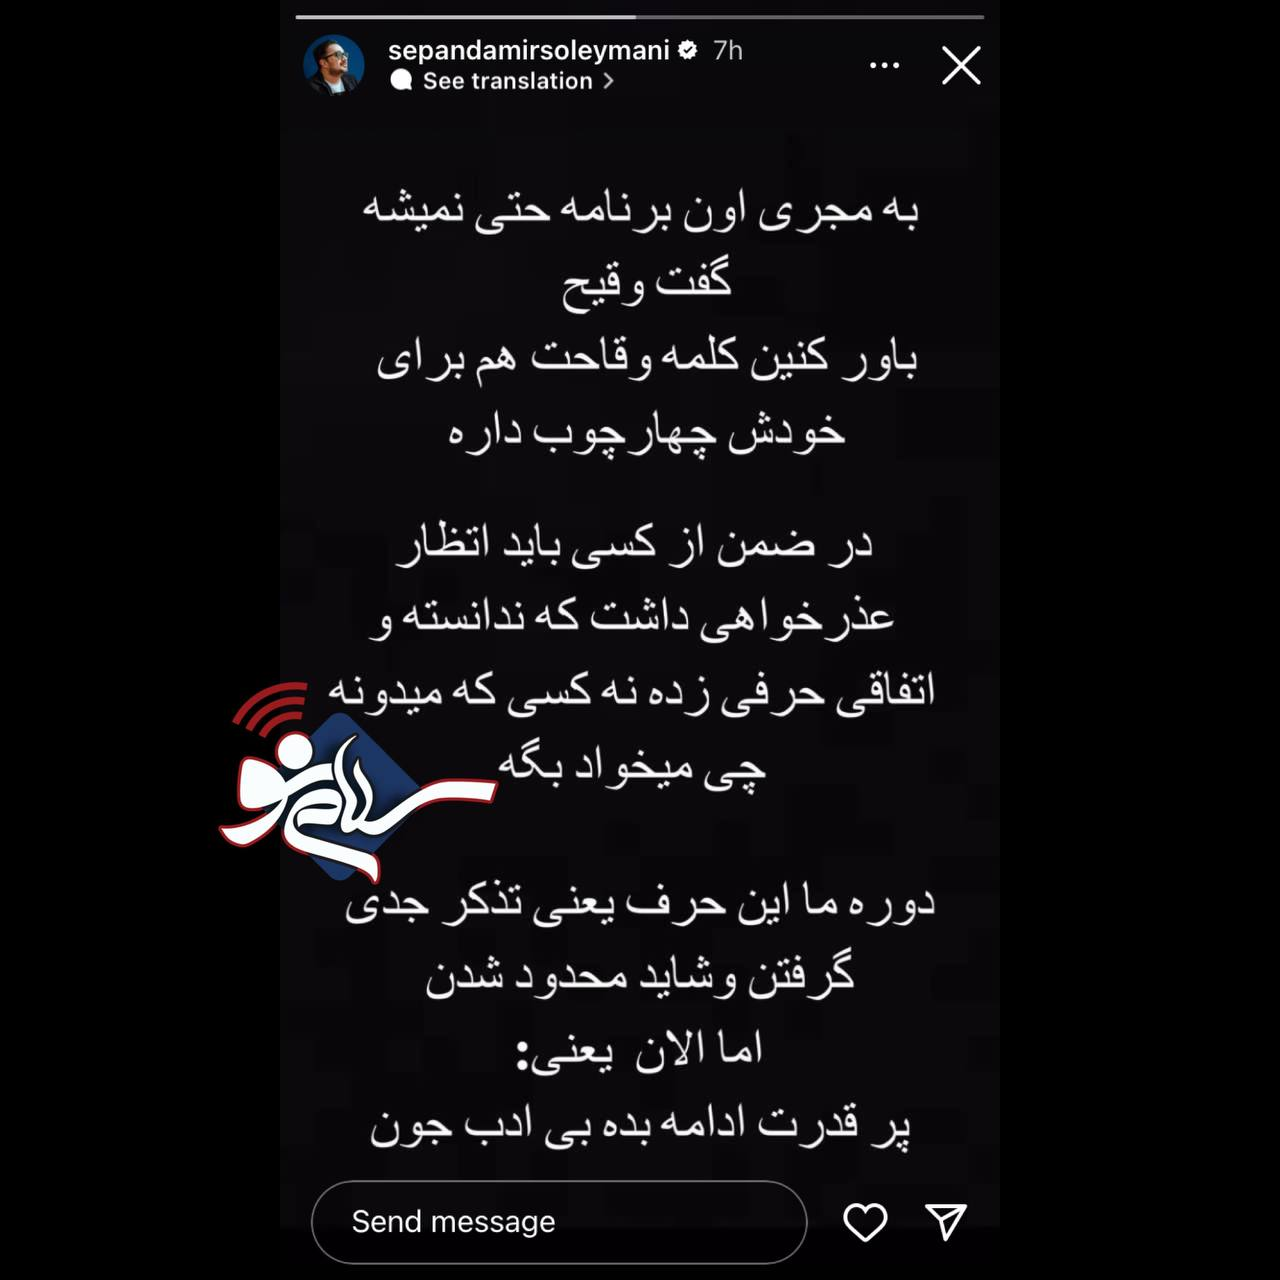 واکنش تند سپند امیرسلیمانی به اظهارات مجری برنامه تلویزیونی شب یلدا + عکس